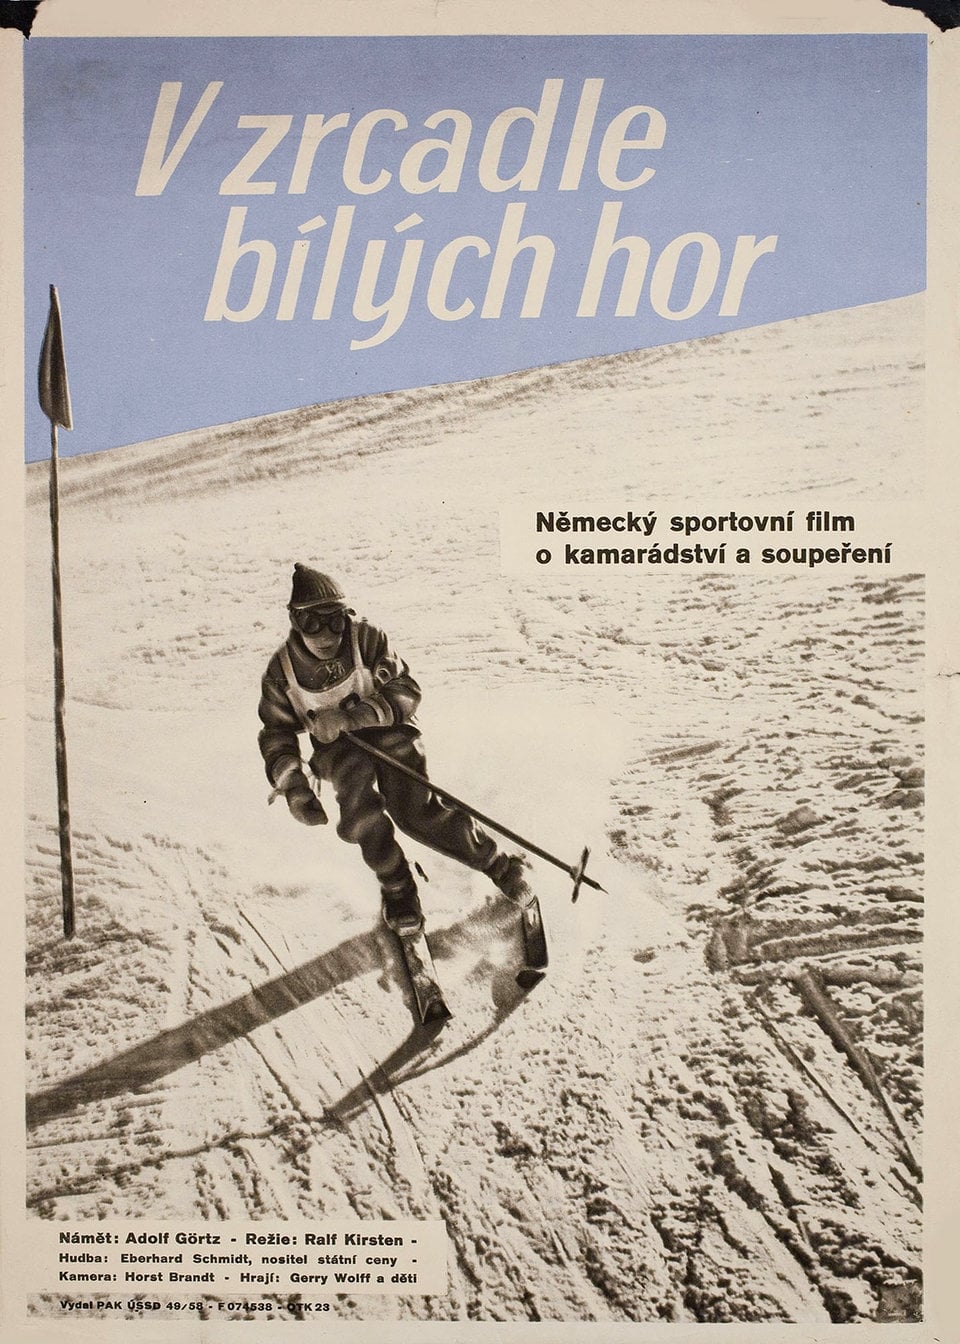 Skimeister von Morgen